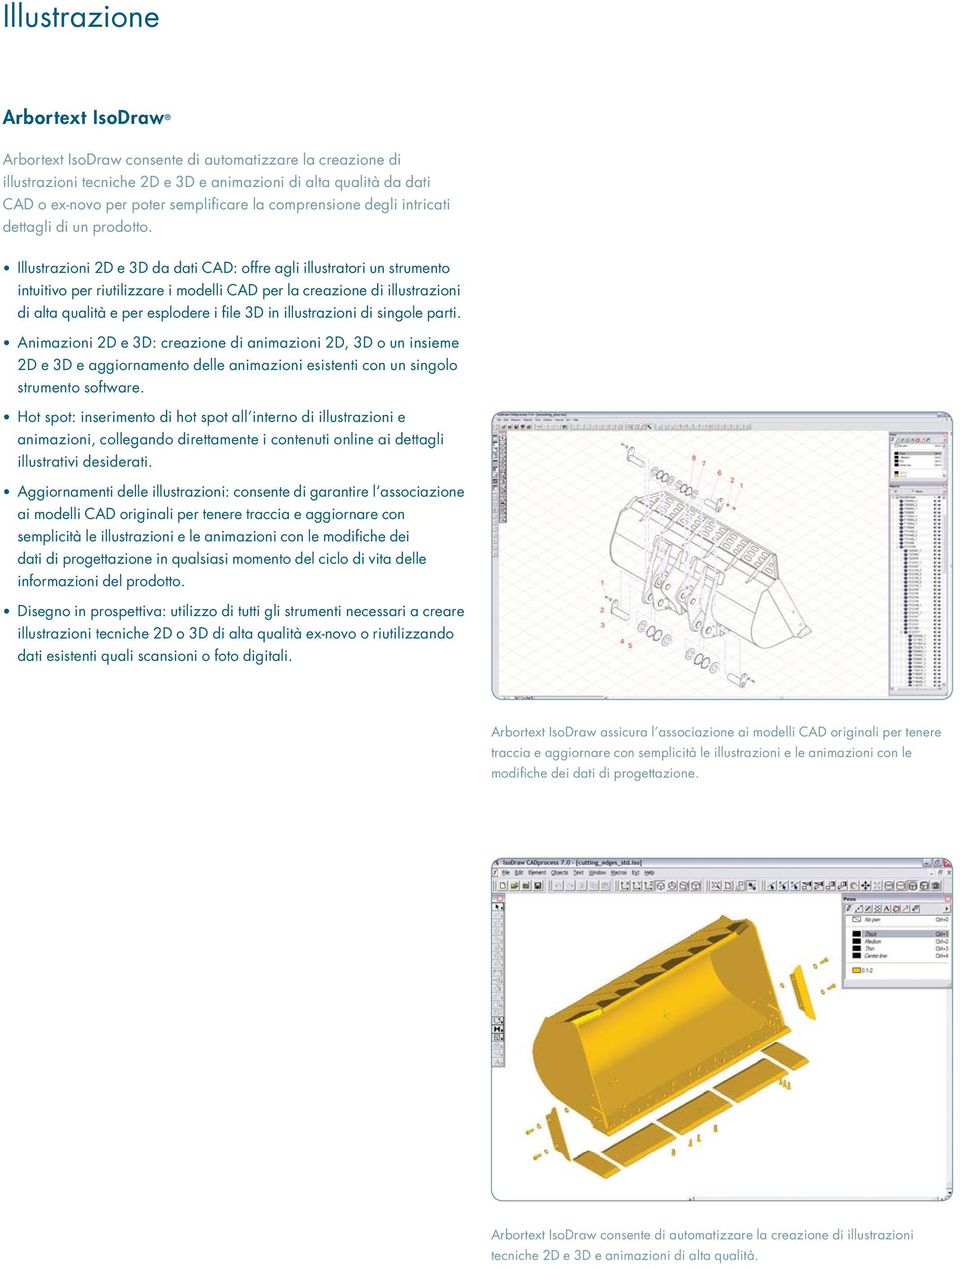 Illustrazioni 2D e 3D da dati CAD: offre agli illustratori un strumento intuitivo per riutilizzare i modelli CAD per la creazione di illustrazioni di alta qualità e per esplodere i file 3D in